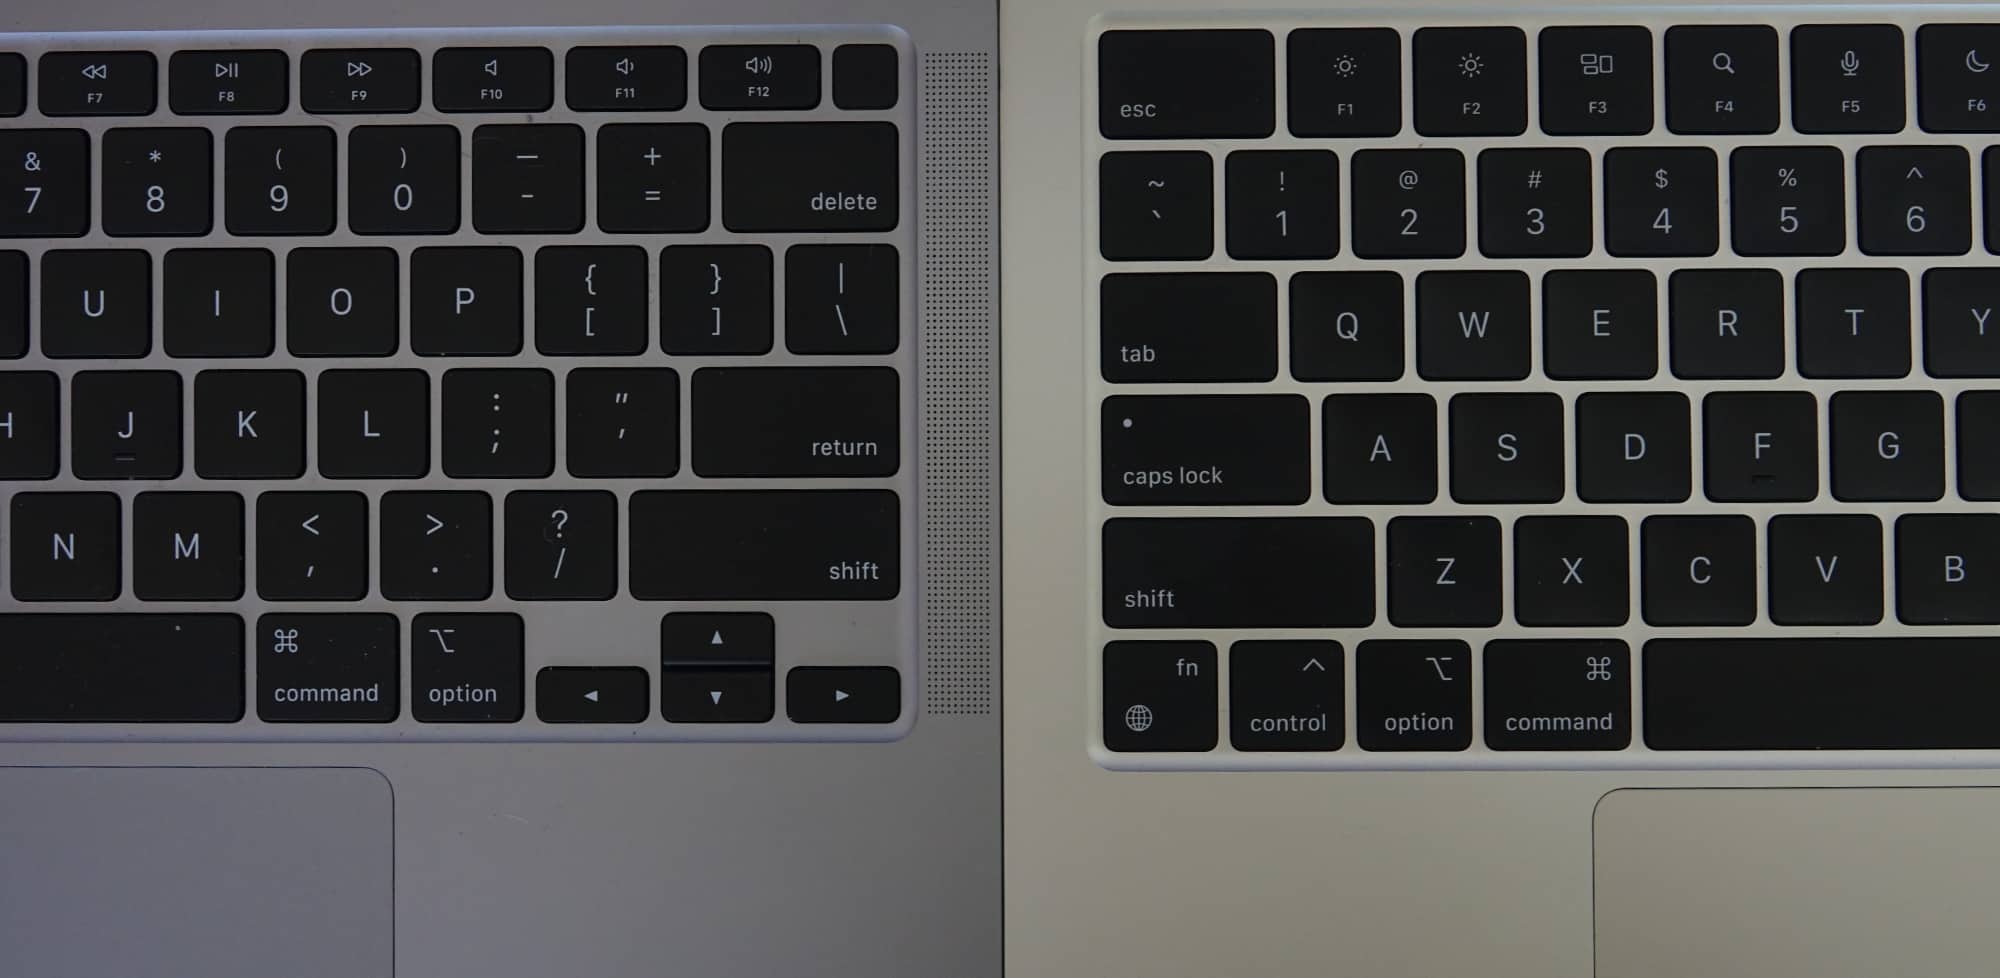 M1 vs M2 MacBook Pro - ULTIMATE COMPARISON! 